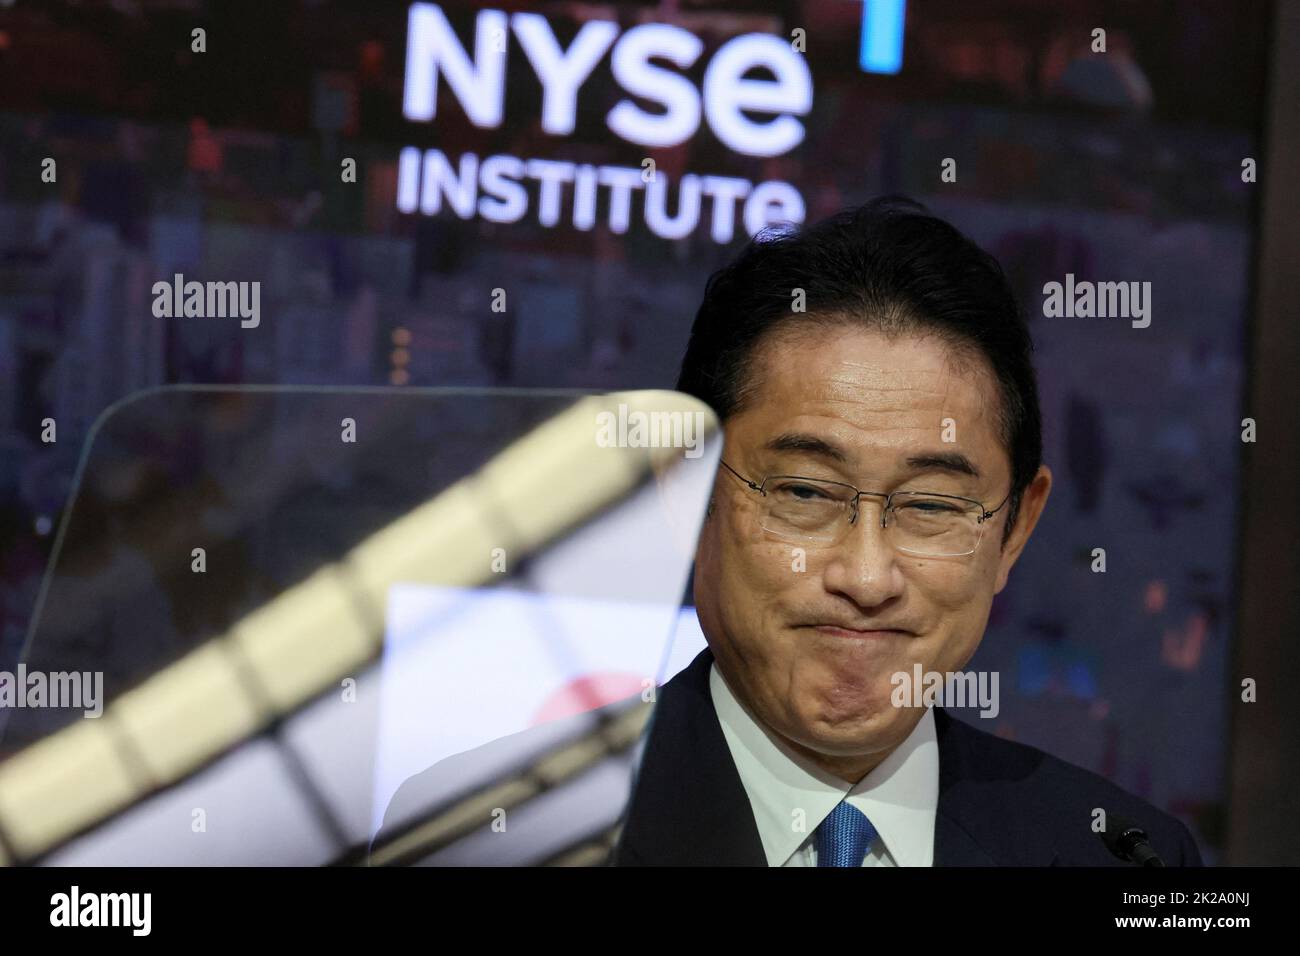 Le Premier ministre japonais Fumio Kishida assiste à une conférence de presse à la Bourse de New York (NYSE) en marge de la session de 77th de l'Assemblée générale des Nations Unies à New York, aux États-Unis, au 22 septembre 2022. REUTERS/Brendan McDermid Banque D'Images